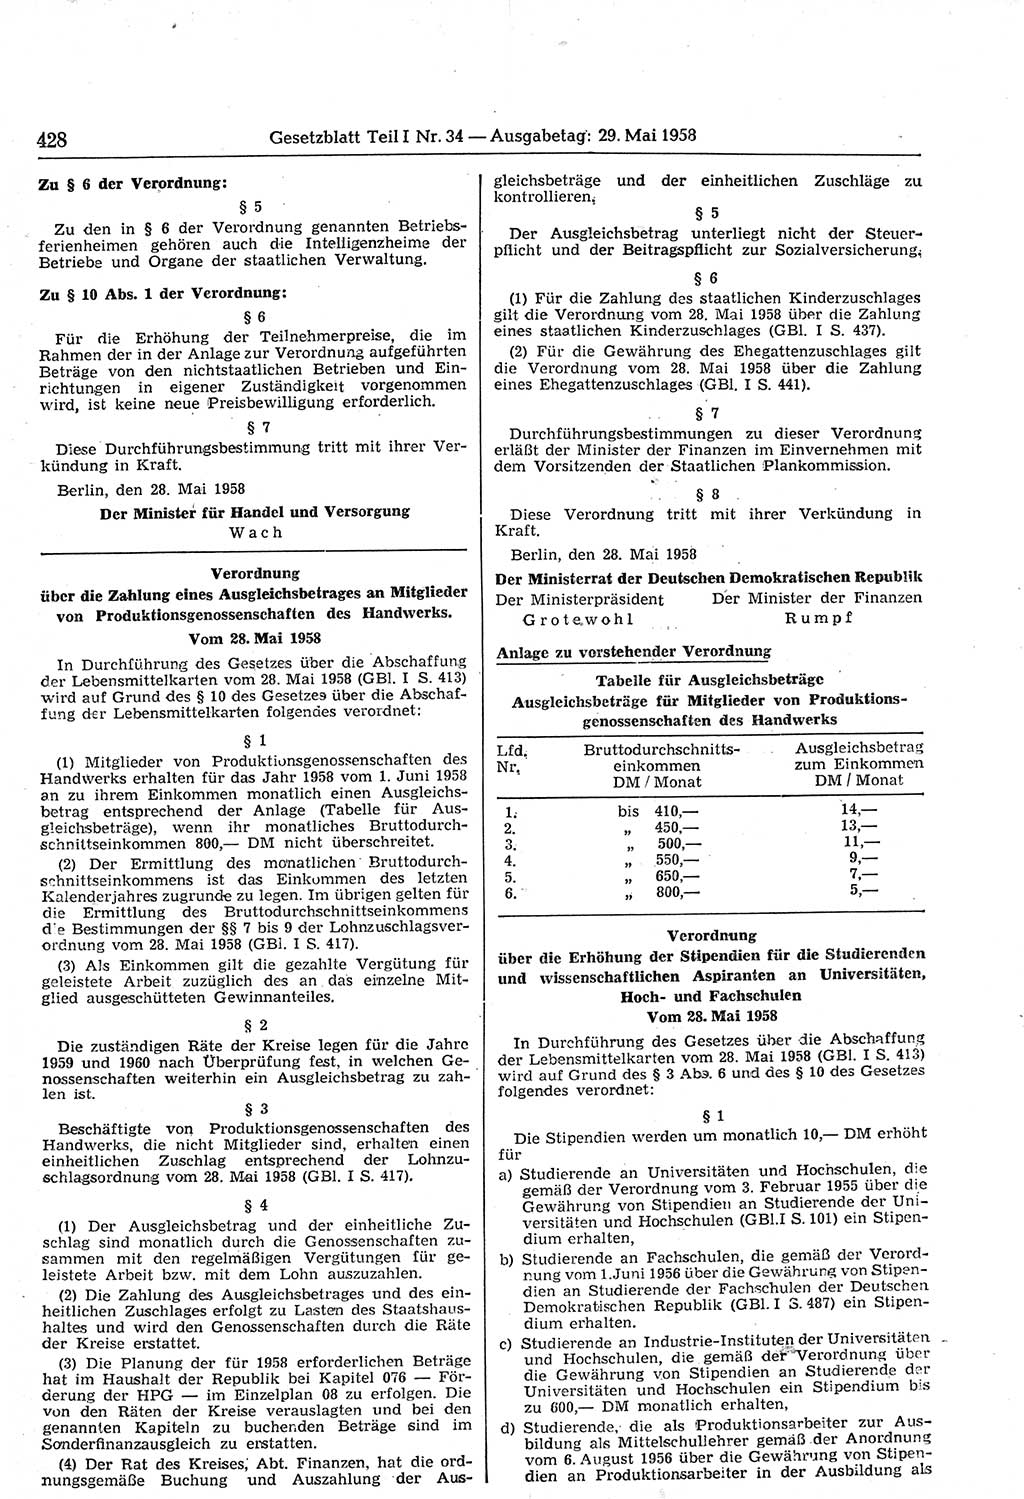 Gesetzblatt (GBl.) der Deutschen Demokratischen Republik (DDR) Teil Ⅰ 1958, Seite 428 (GBl. DDR Ⅰ 1958, S. 428)